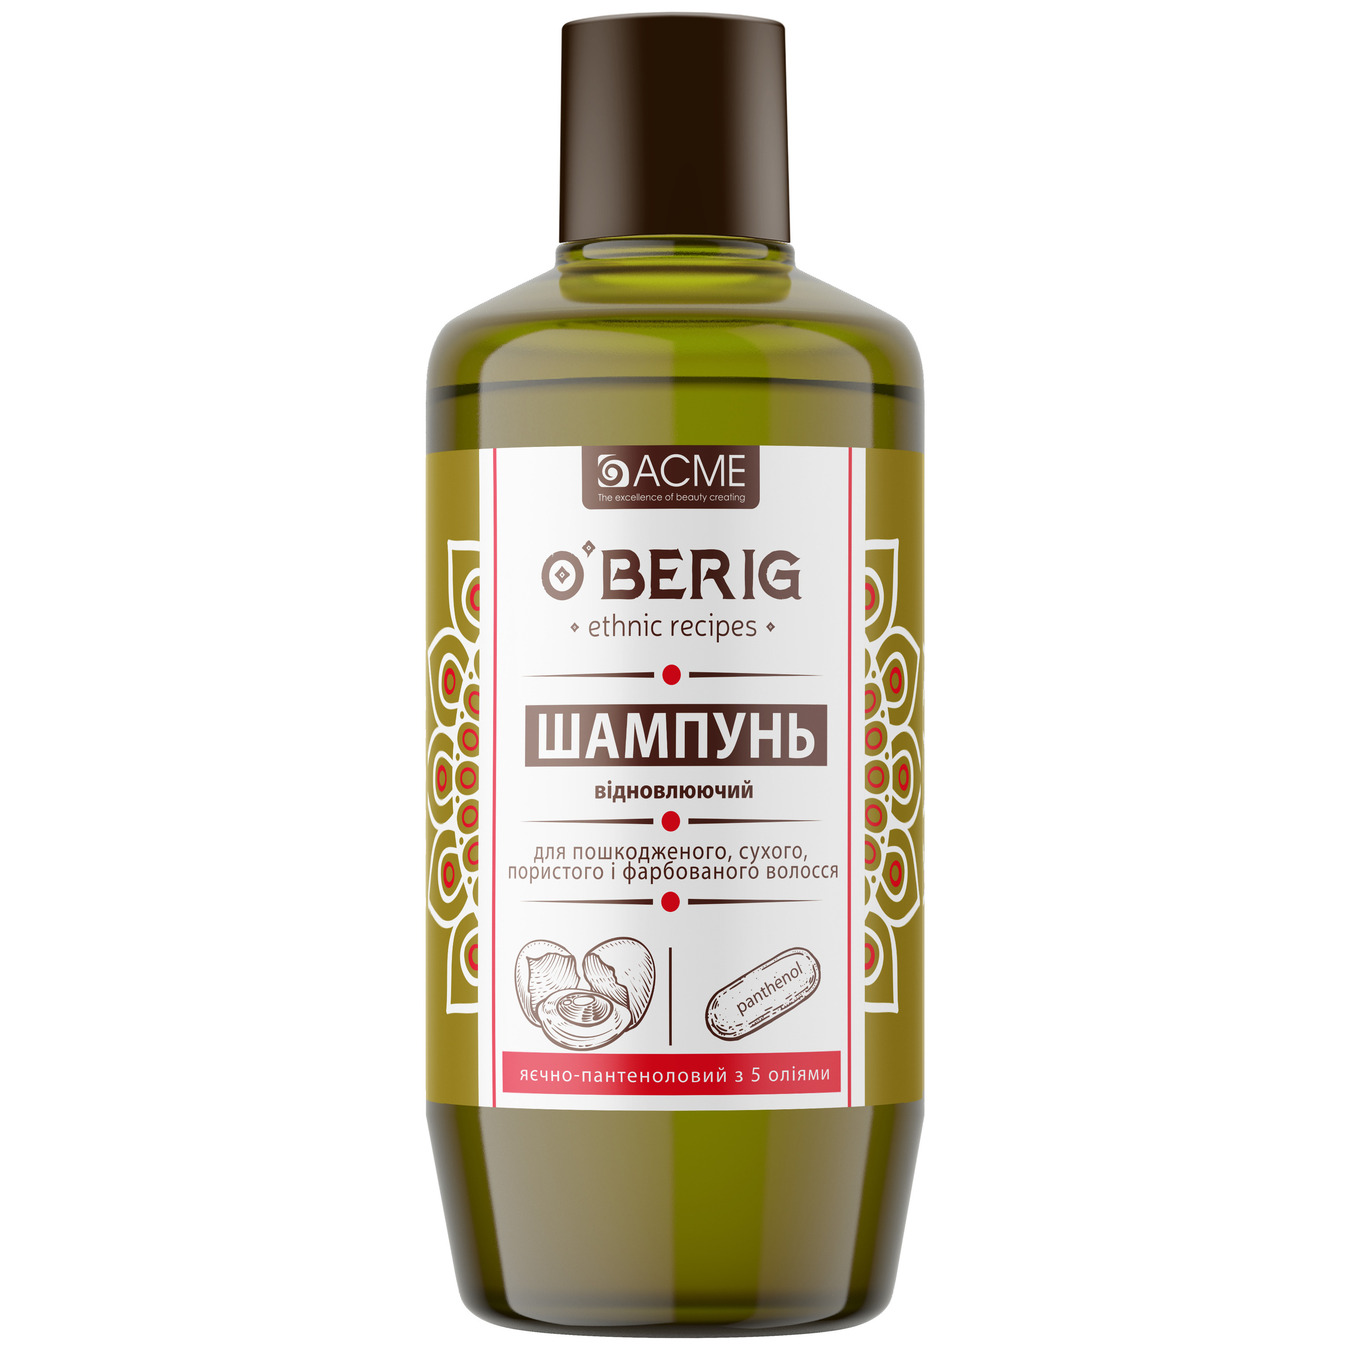 Шампунь-масло O'Berig для волос поврежденных сухих пористых и крашеных яично-пантеноловый с 5 маслами 500 мл